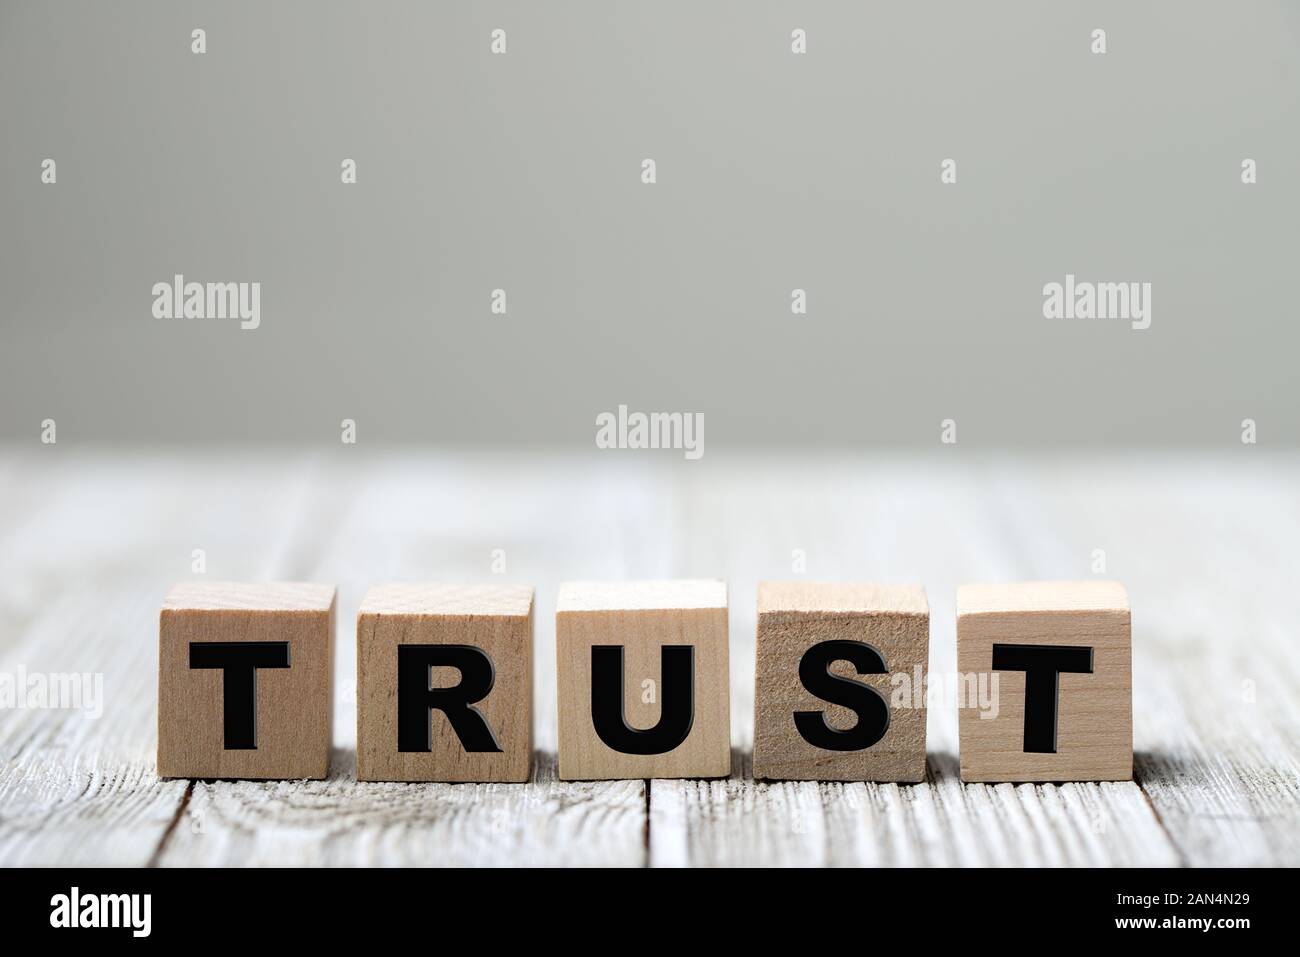 Trust word written on wood block Stock Photo